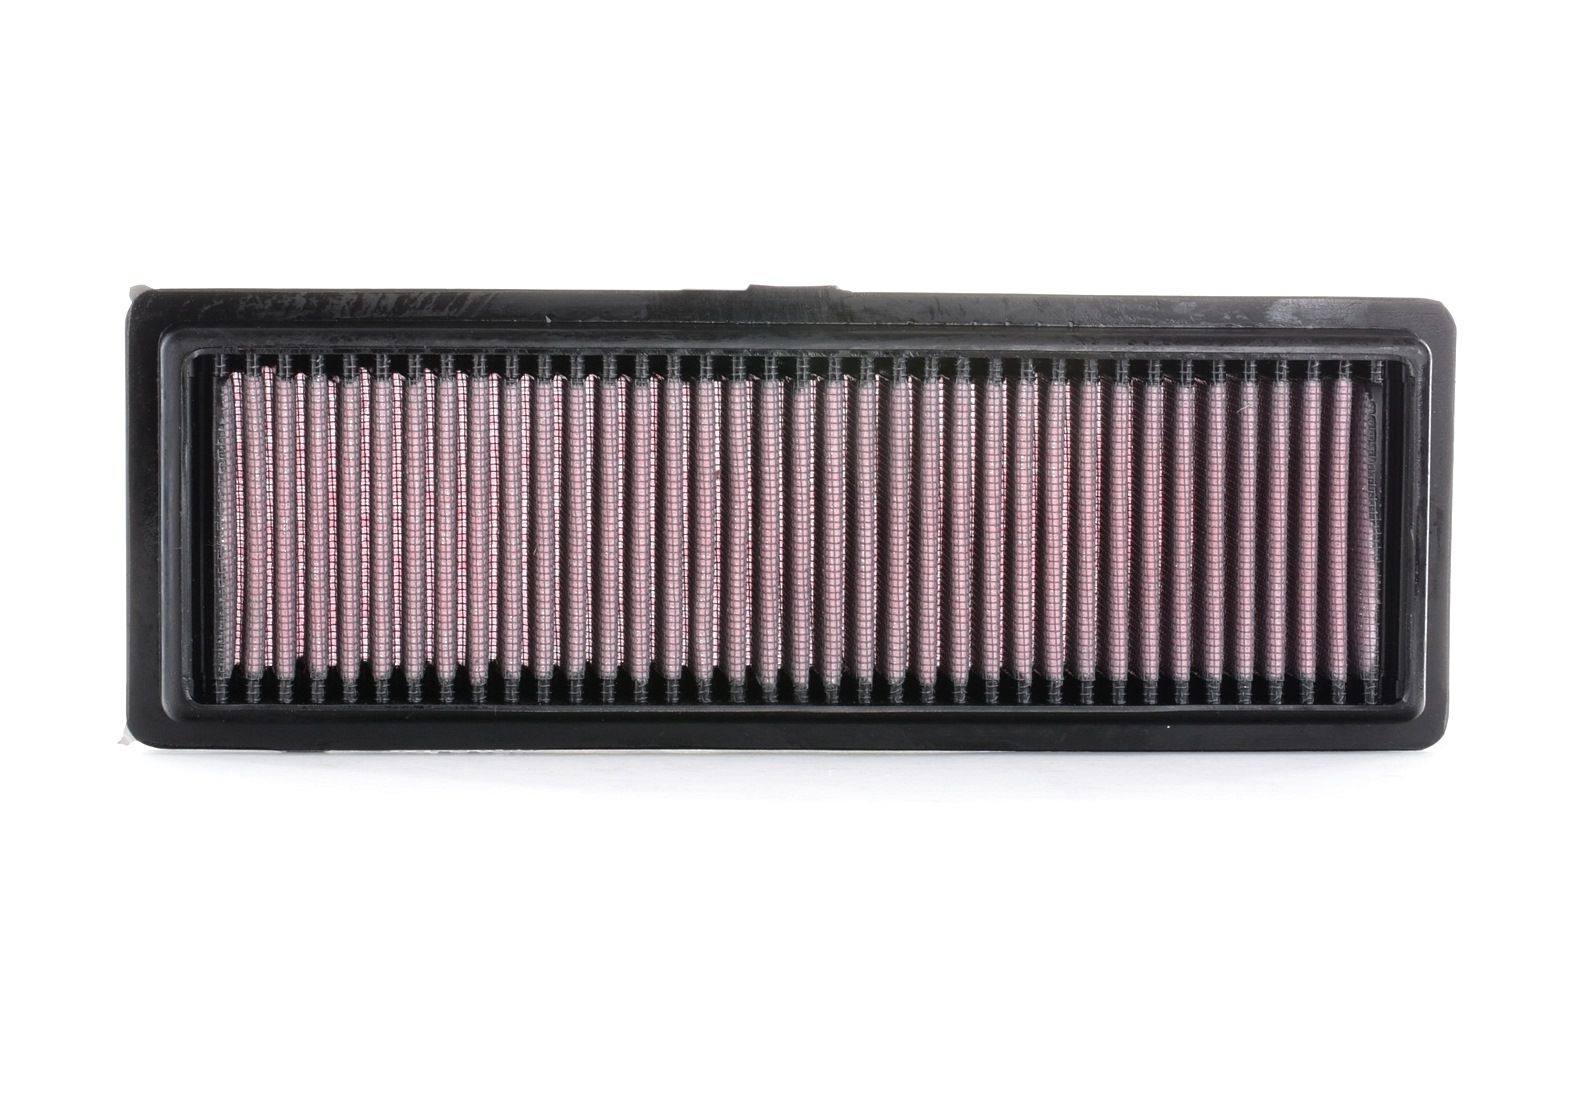 K&N Filters 25mm, 98mm, 283mm, Vierkant, Long life filter Lengte: 283mm, Breedte 2 [mm]: 98mm, Hoogte: 25mm Luchtfilter 33-2931 koop goedkoop